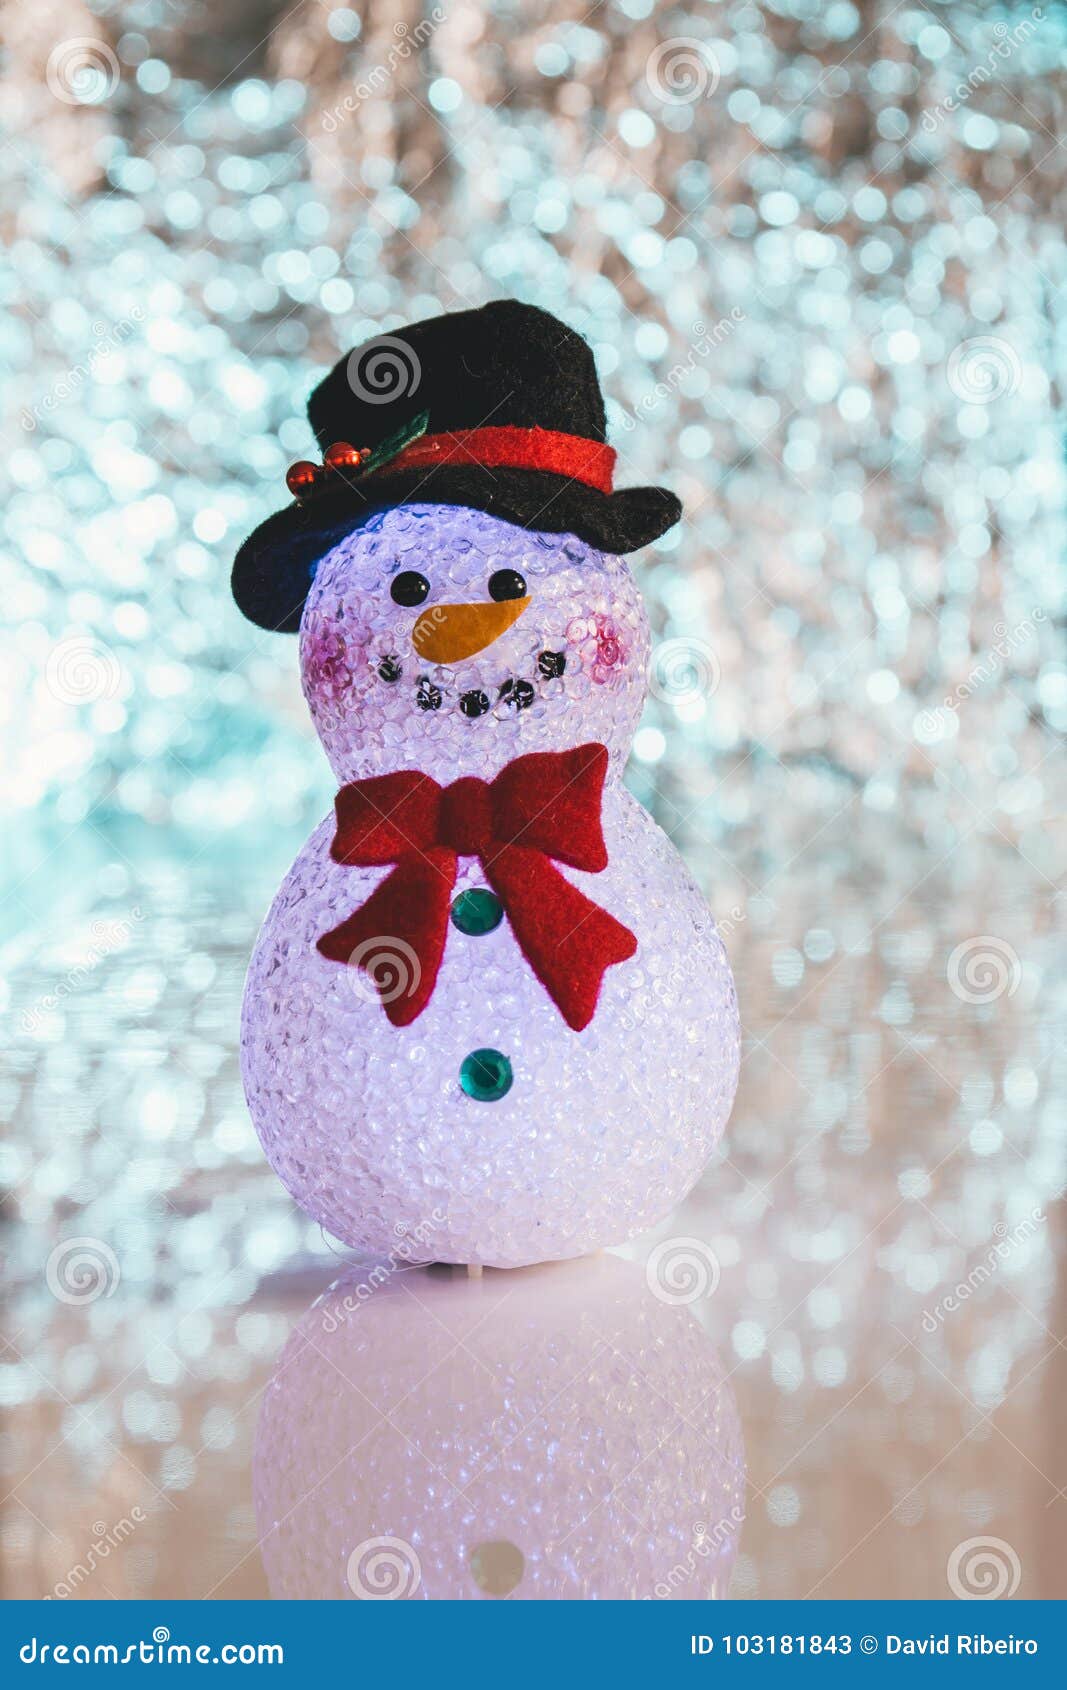 Melody Jane Casas de Muñecas Hombre Nieve 1:12 Navidad Muñeco de nieve de accesorios de jardín 